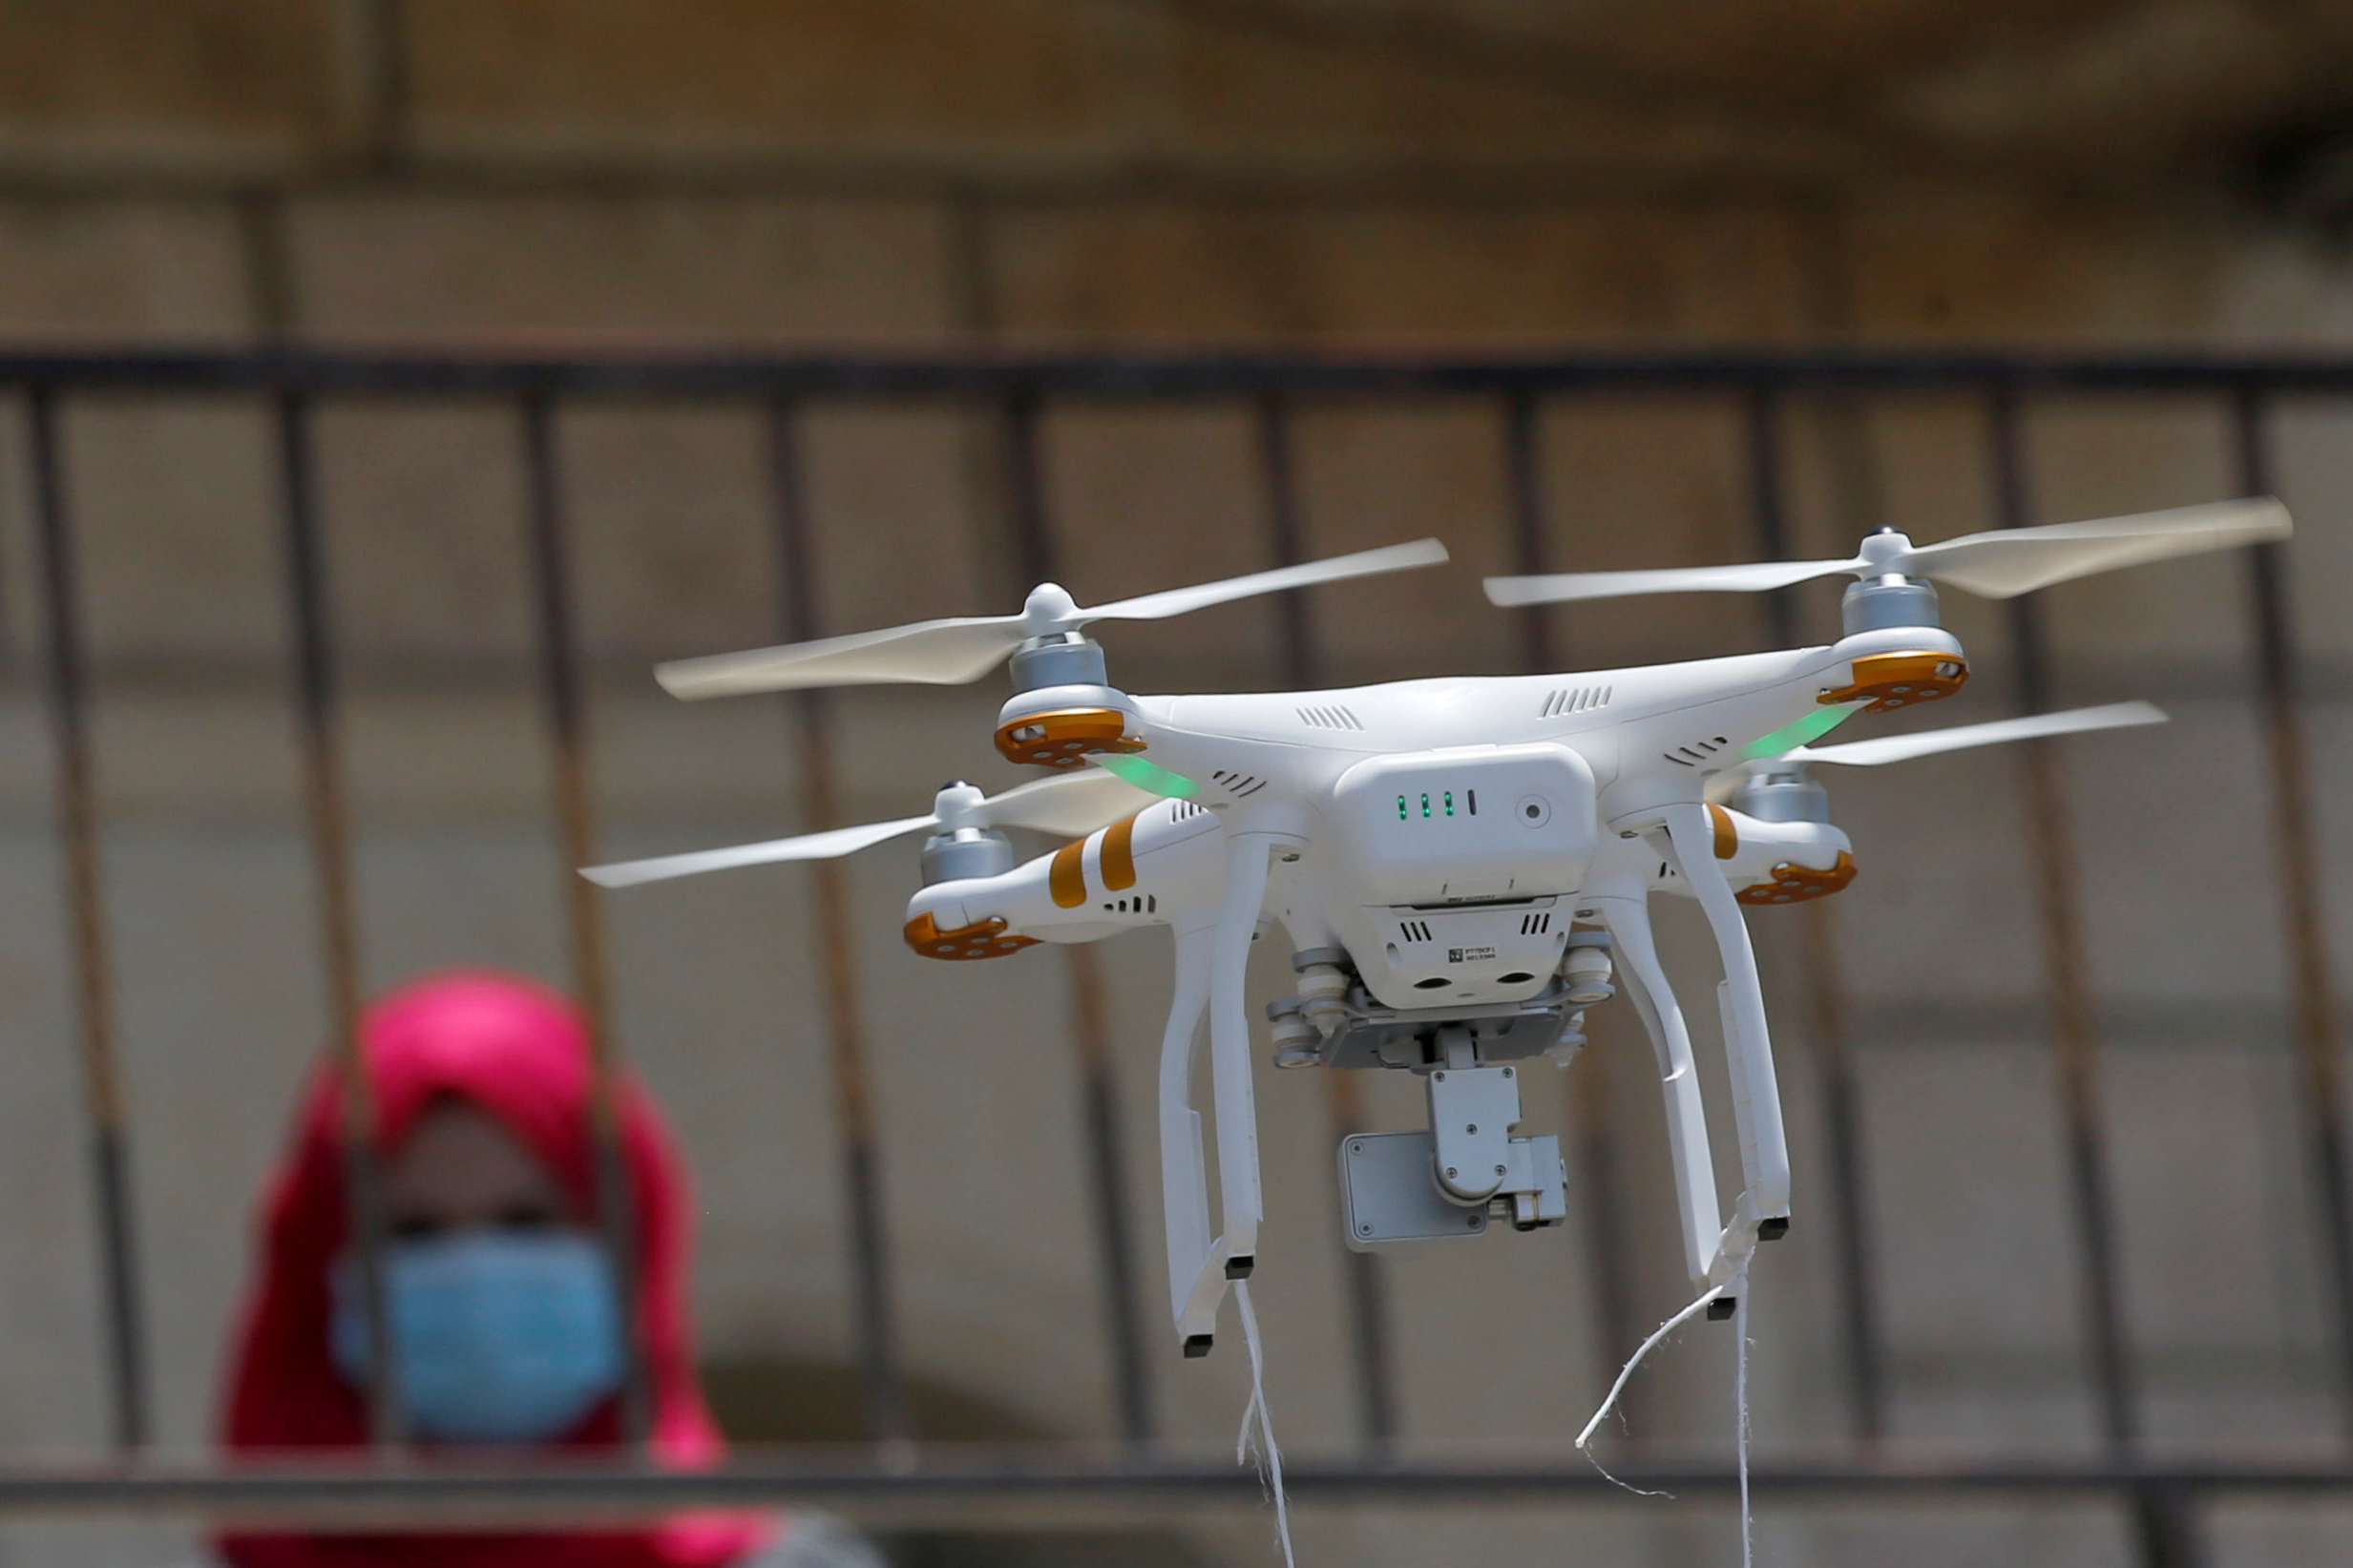 Los drones son usados con fines recreativos y comerciales, no sólo bélicos (Foto. Archivo/Reuters)